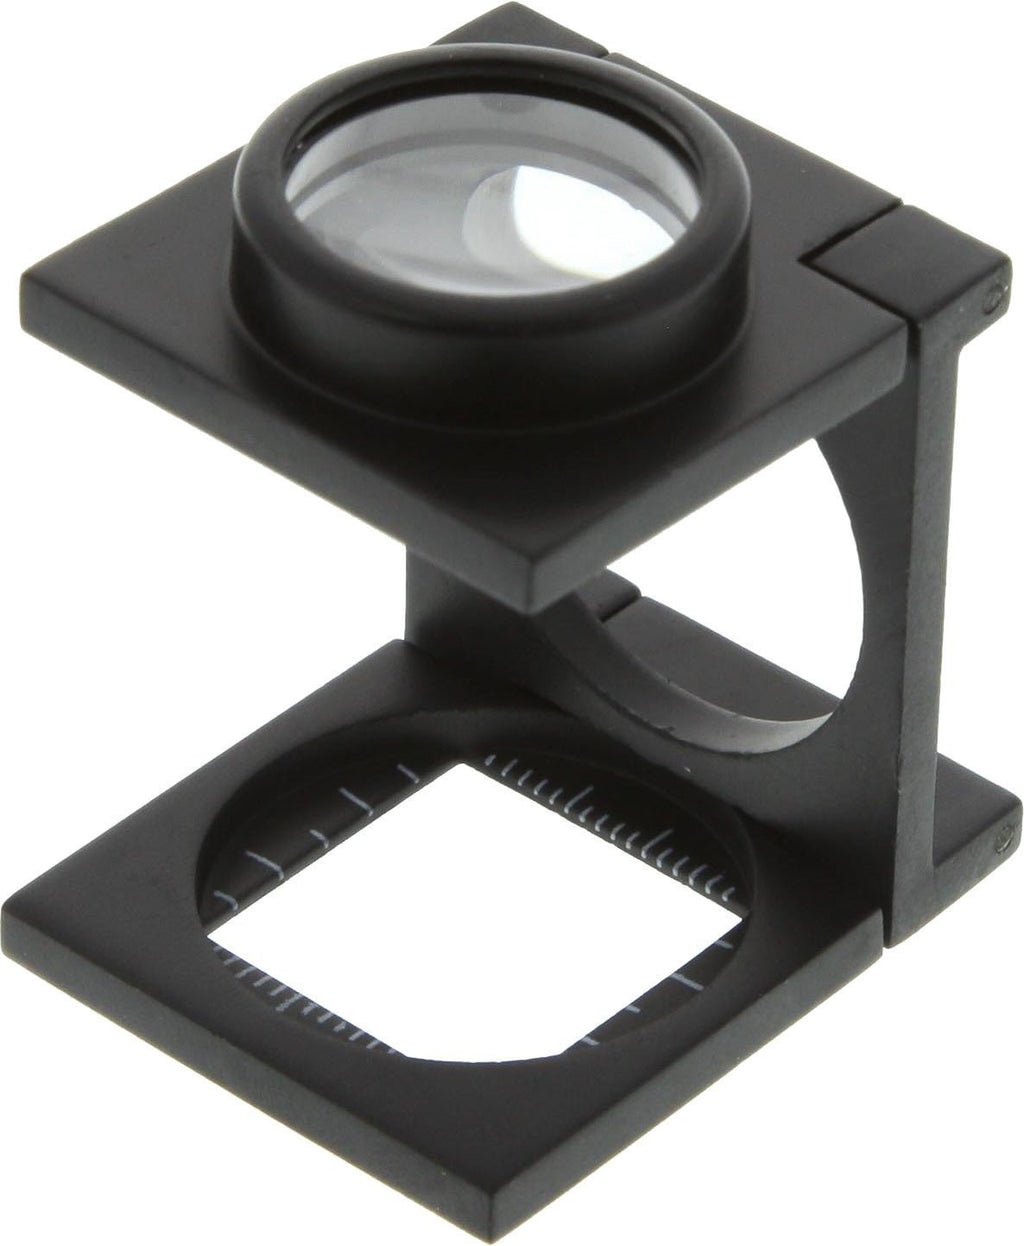 SE - Magnifier - Folding, Aluminum Body, 15x, .75in. - MK9007A